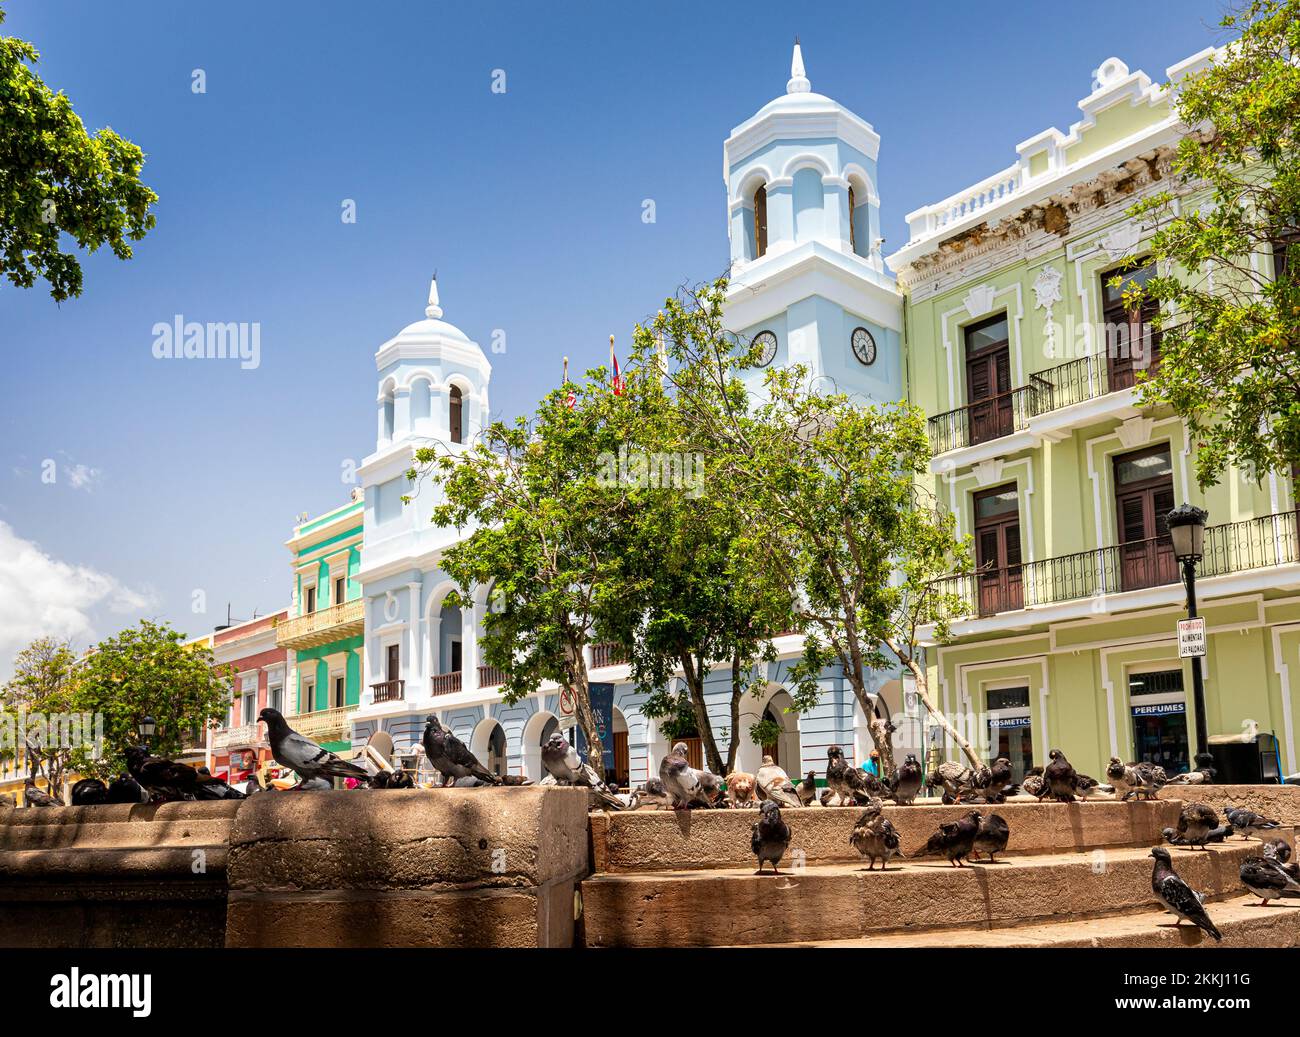 Tauben auf der Plaza de Armas mit Rathaus im Hintergrund in Old San Juan, auf der tropischen karibischen Insel Puerto Rico, USA. Stockfoto